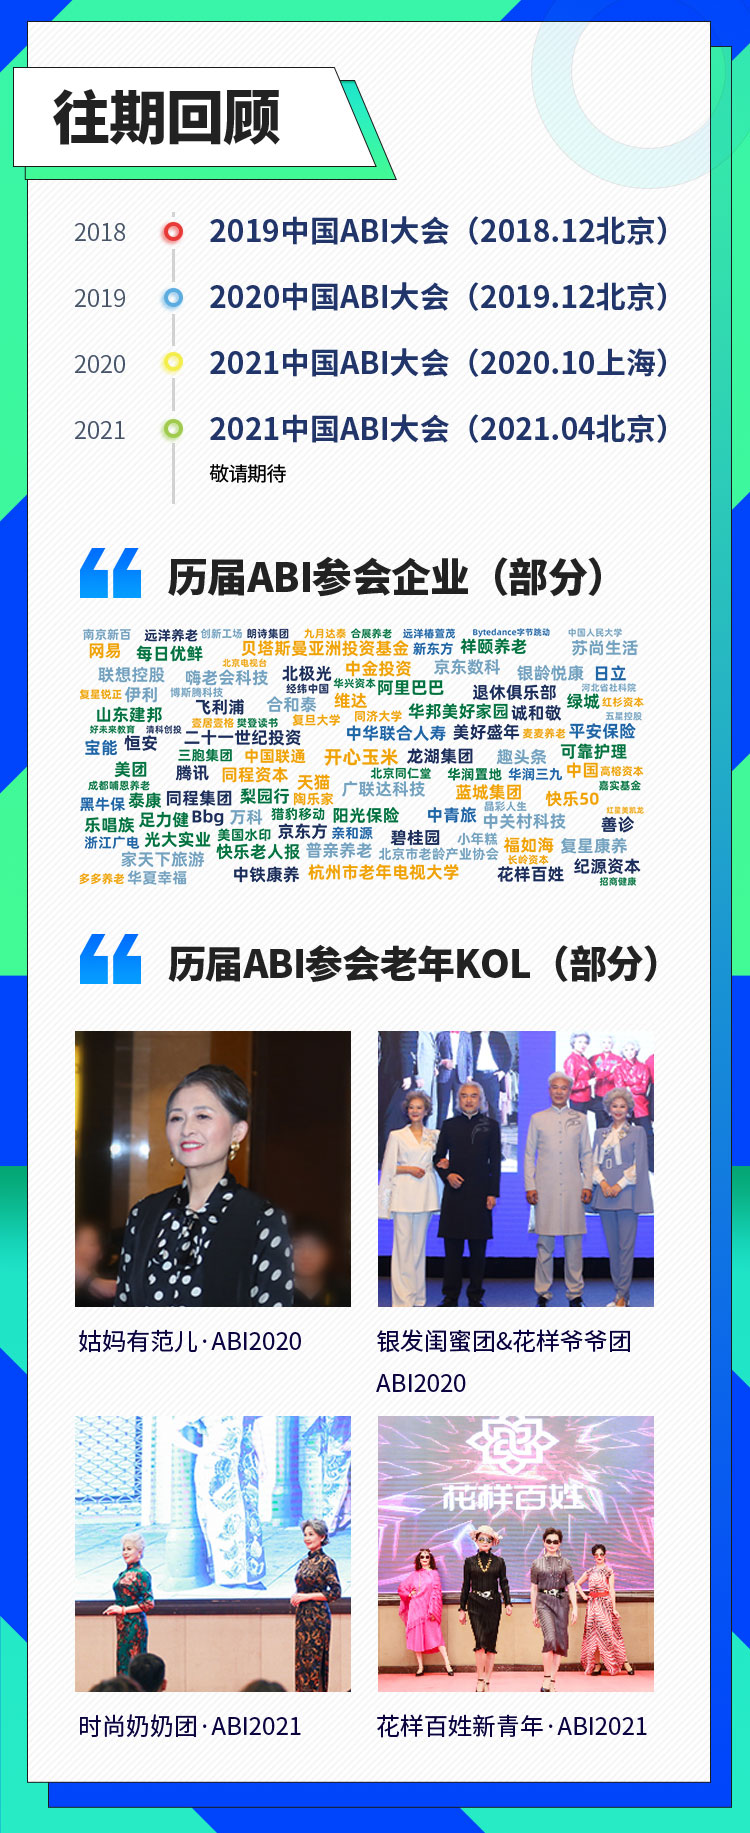 ABI2021中国老年产业商业创新大会